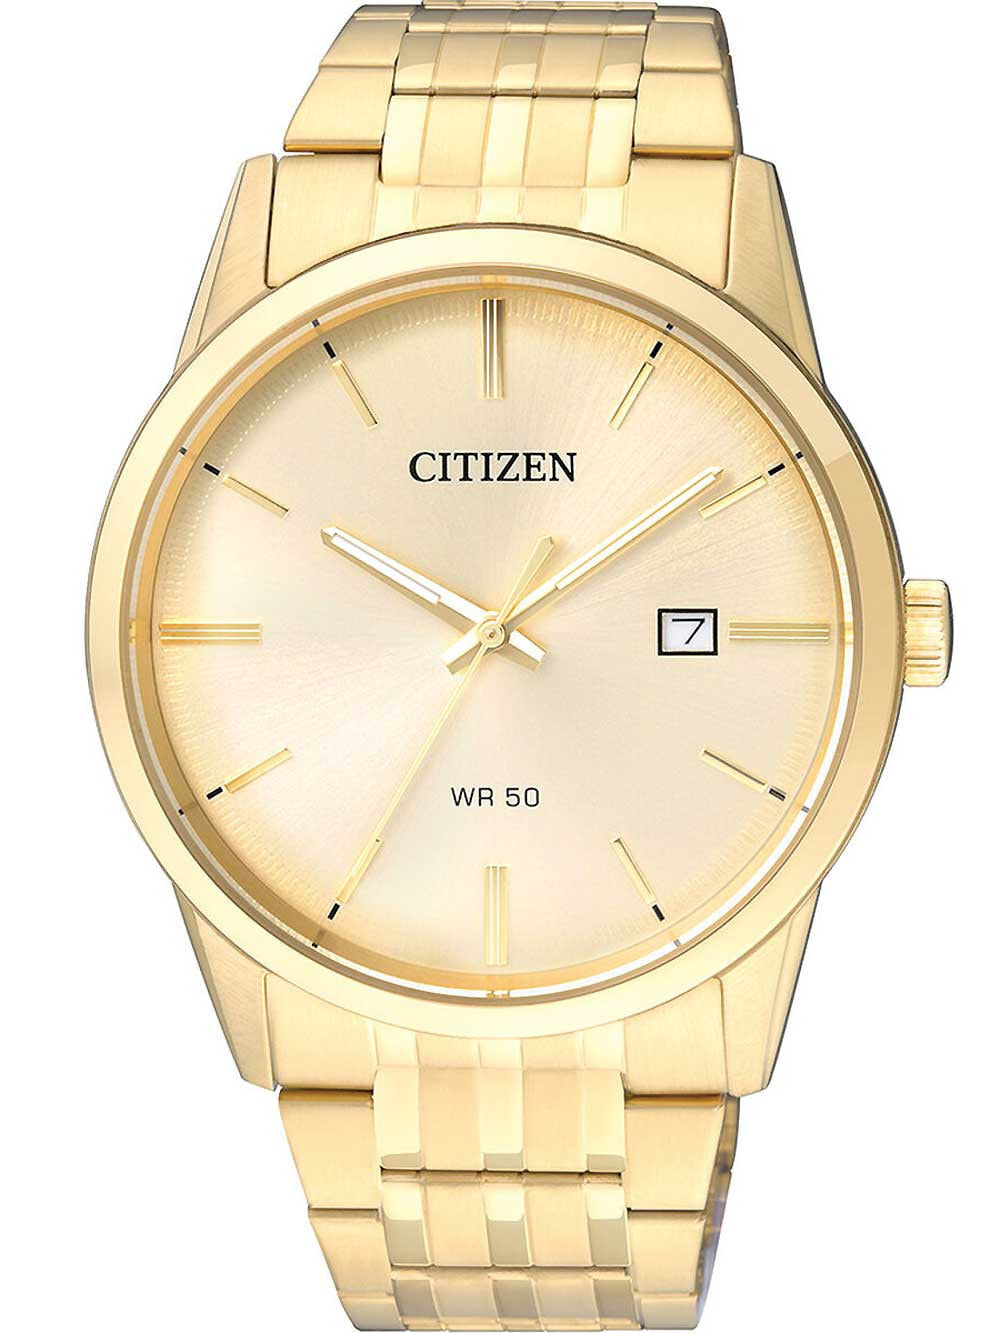 Мужские наручные часы с золотым браслетом Citizen BI5002-57P quartz mens watch 39mm 5ATM